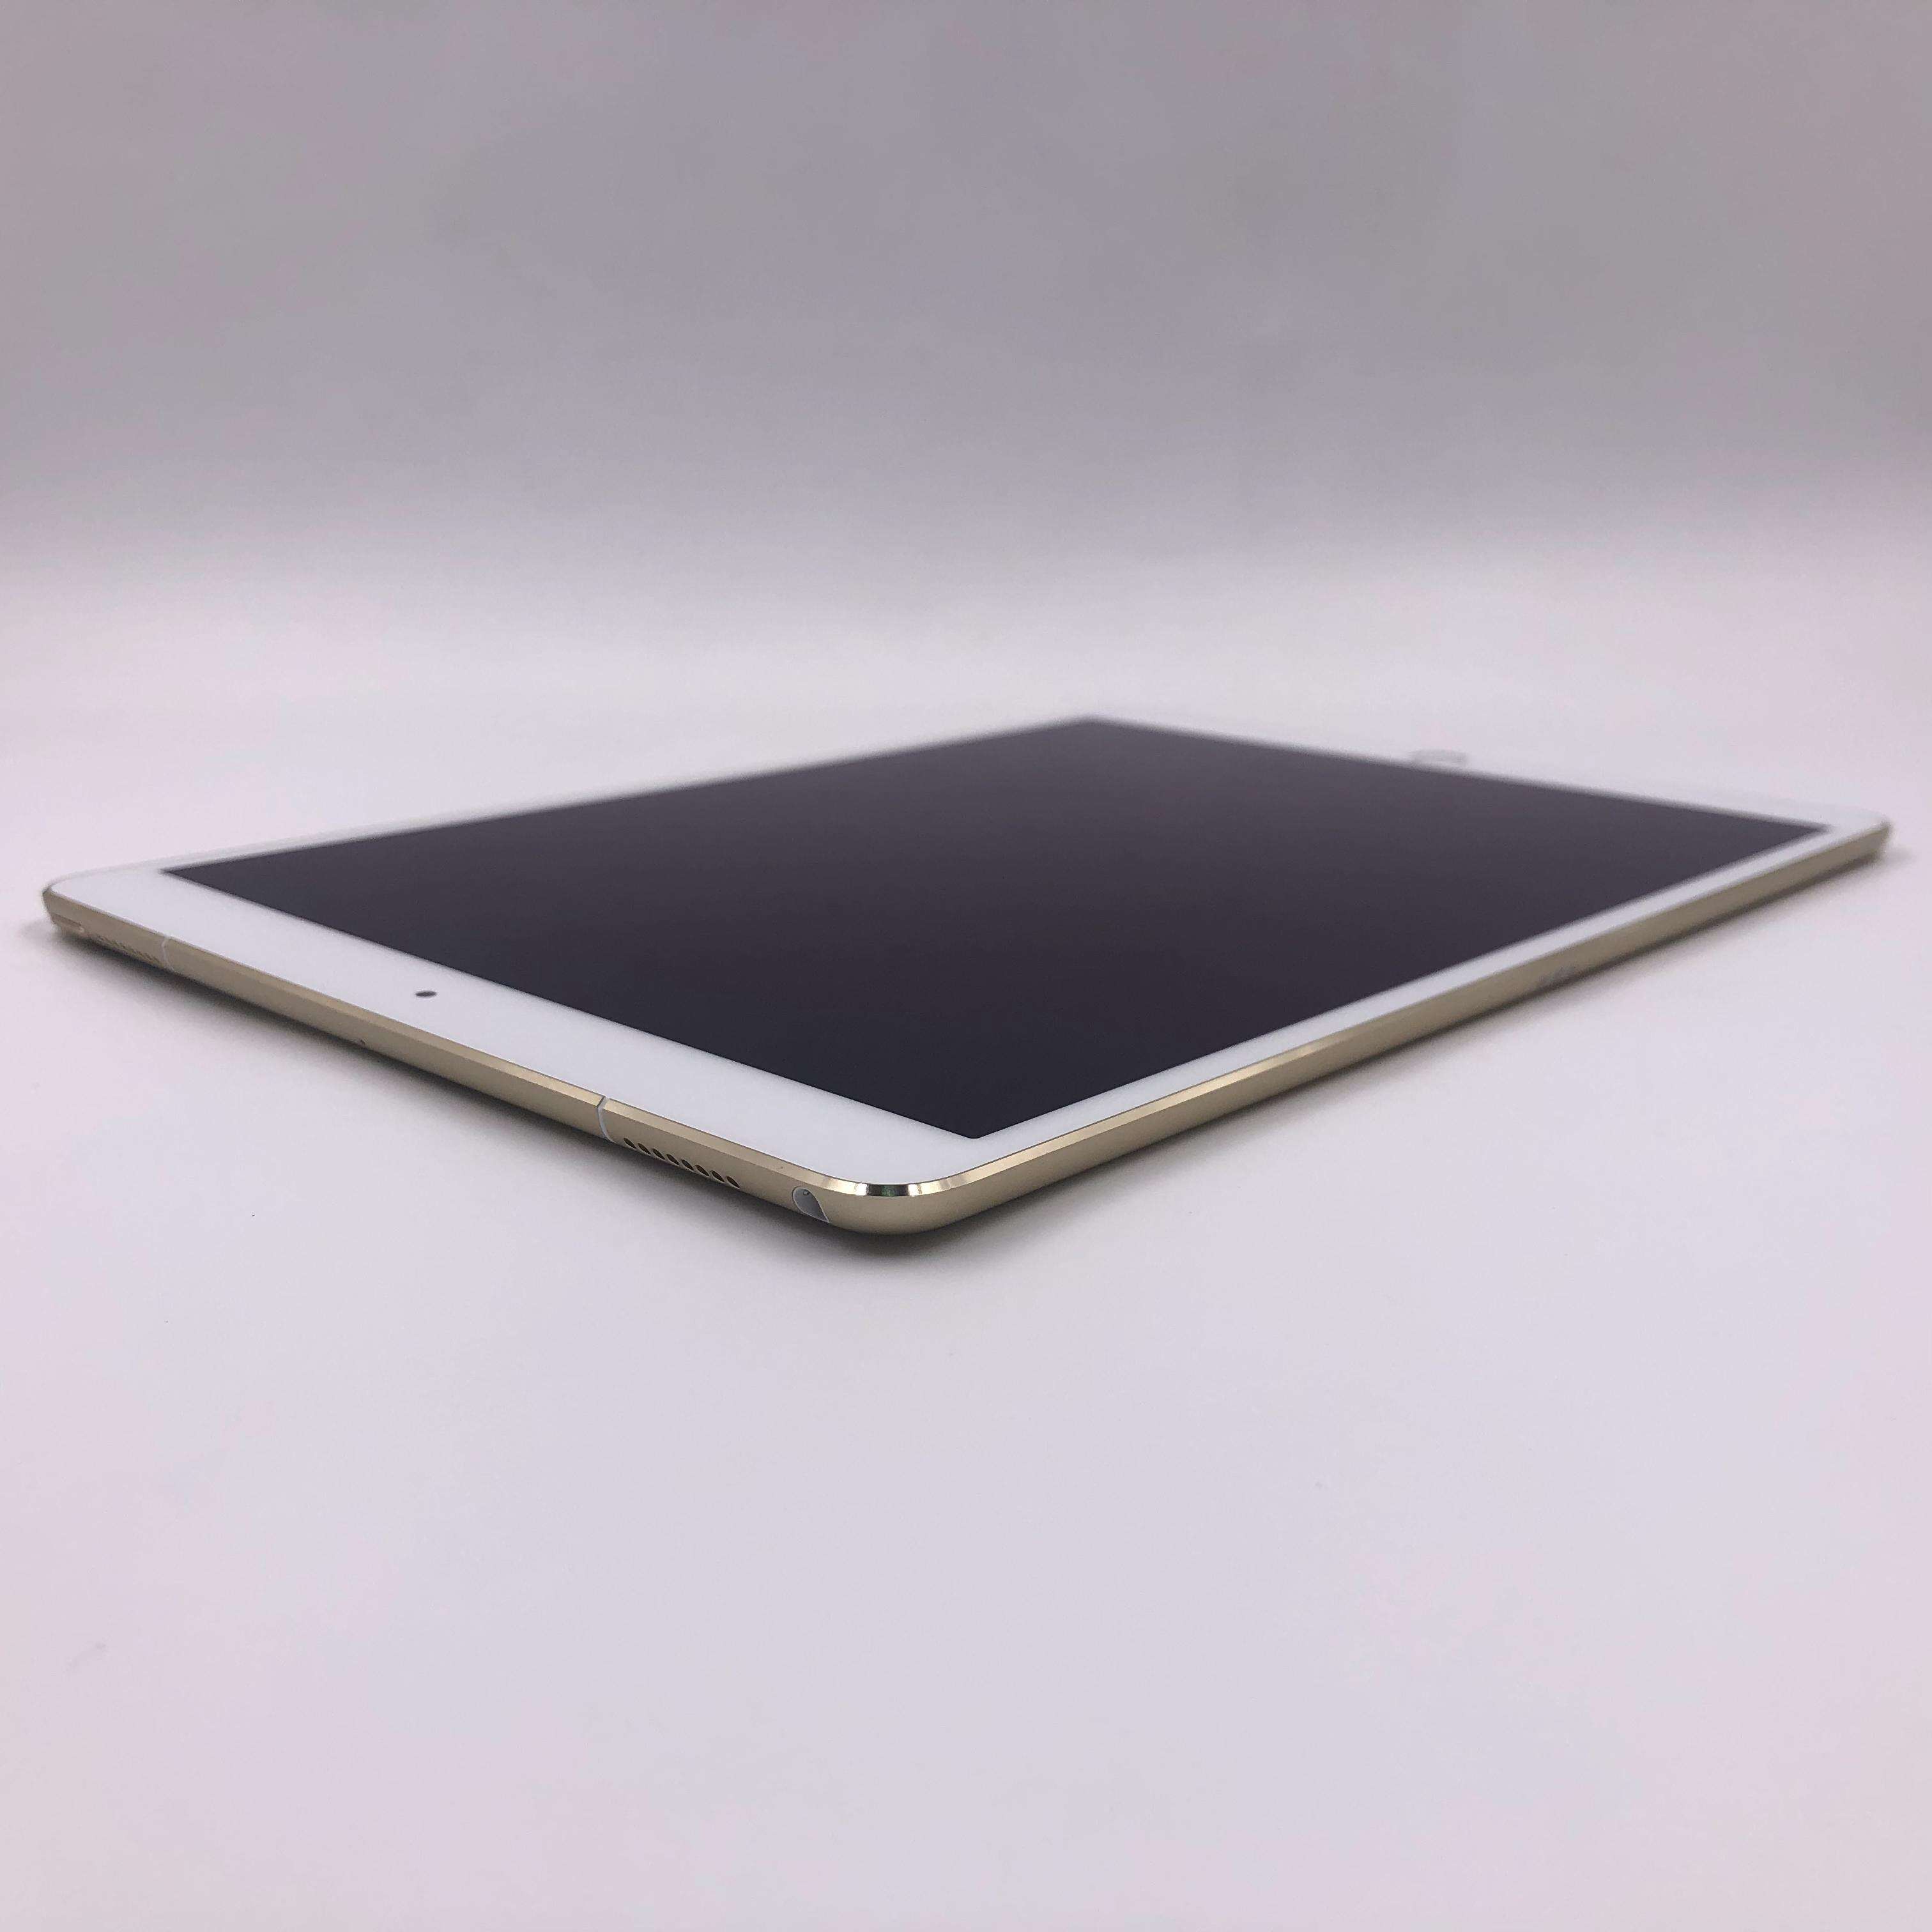 iPad Pro 10.5英寸(2017) 64G Cellular版